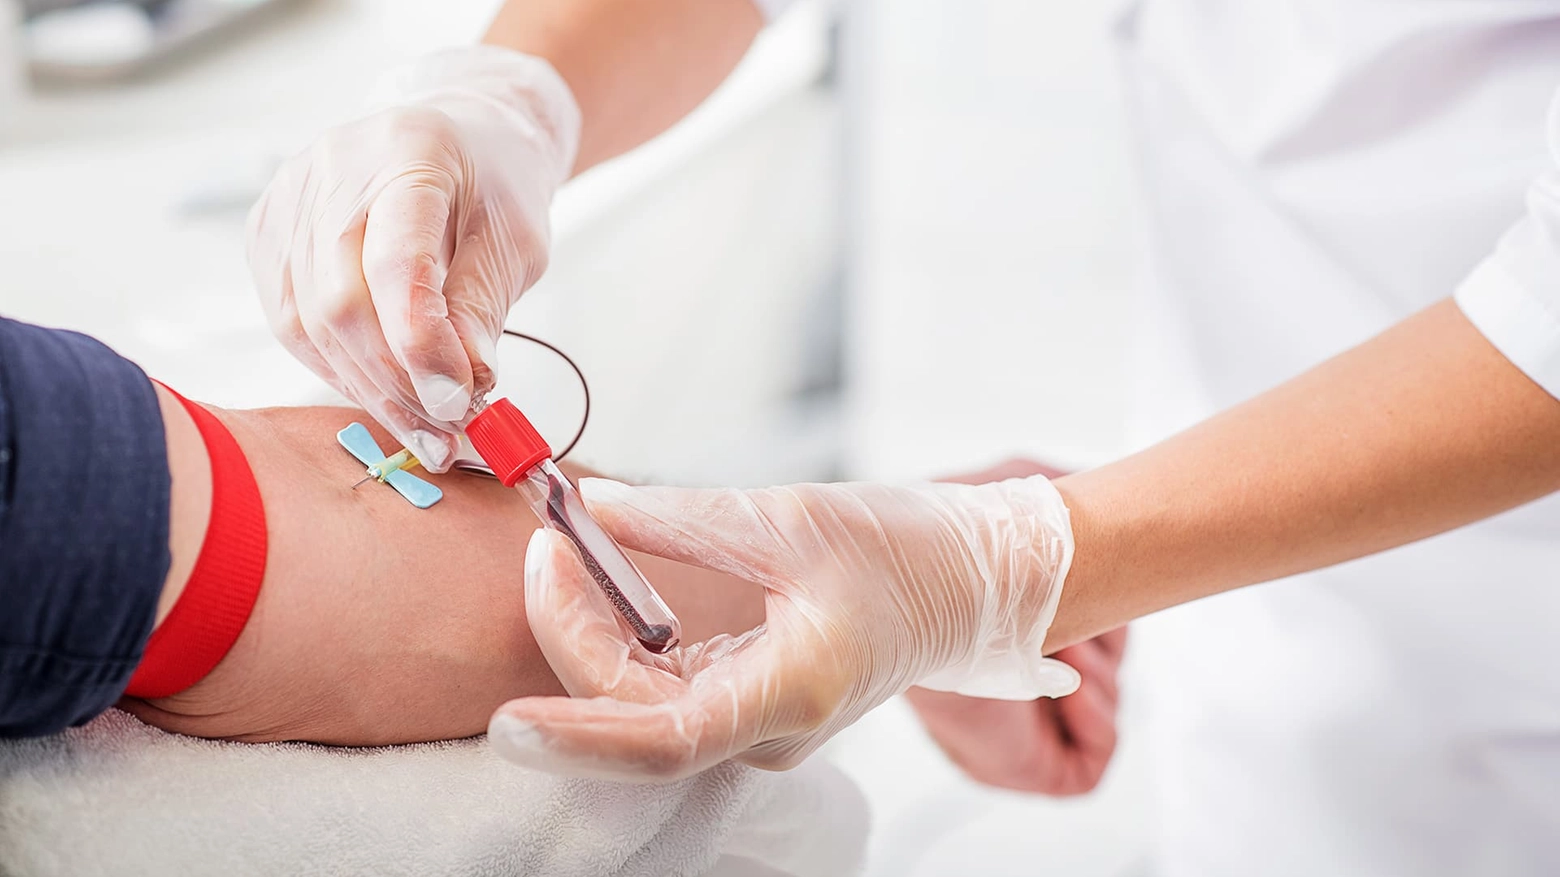 L'esame del sangue è lo strumento più diffuso tra i milanesi per monitorare la propria salute